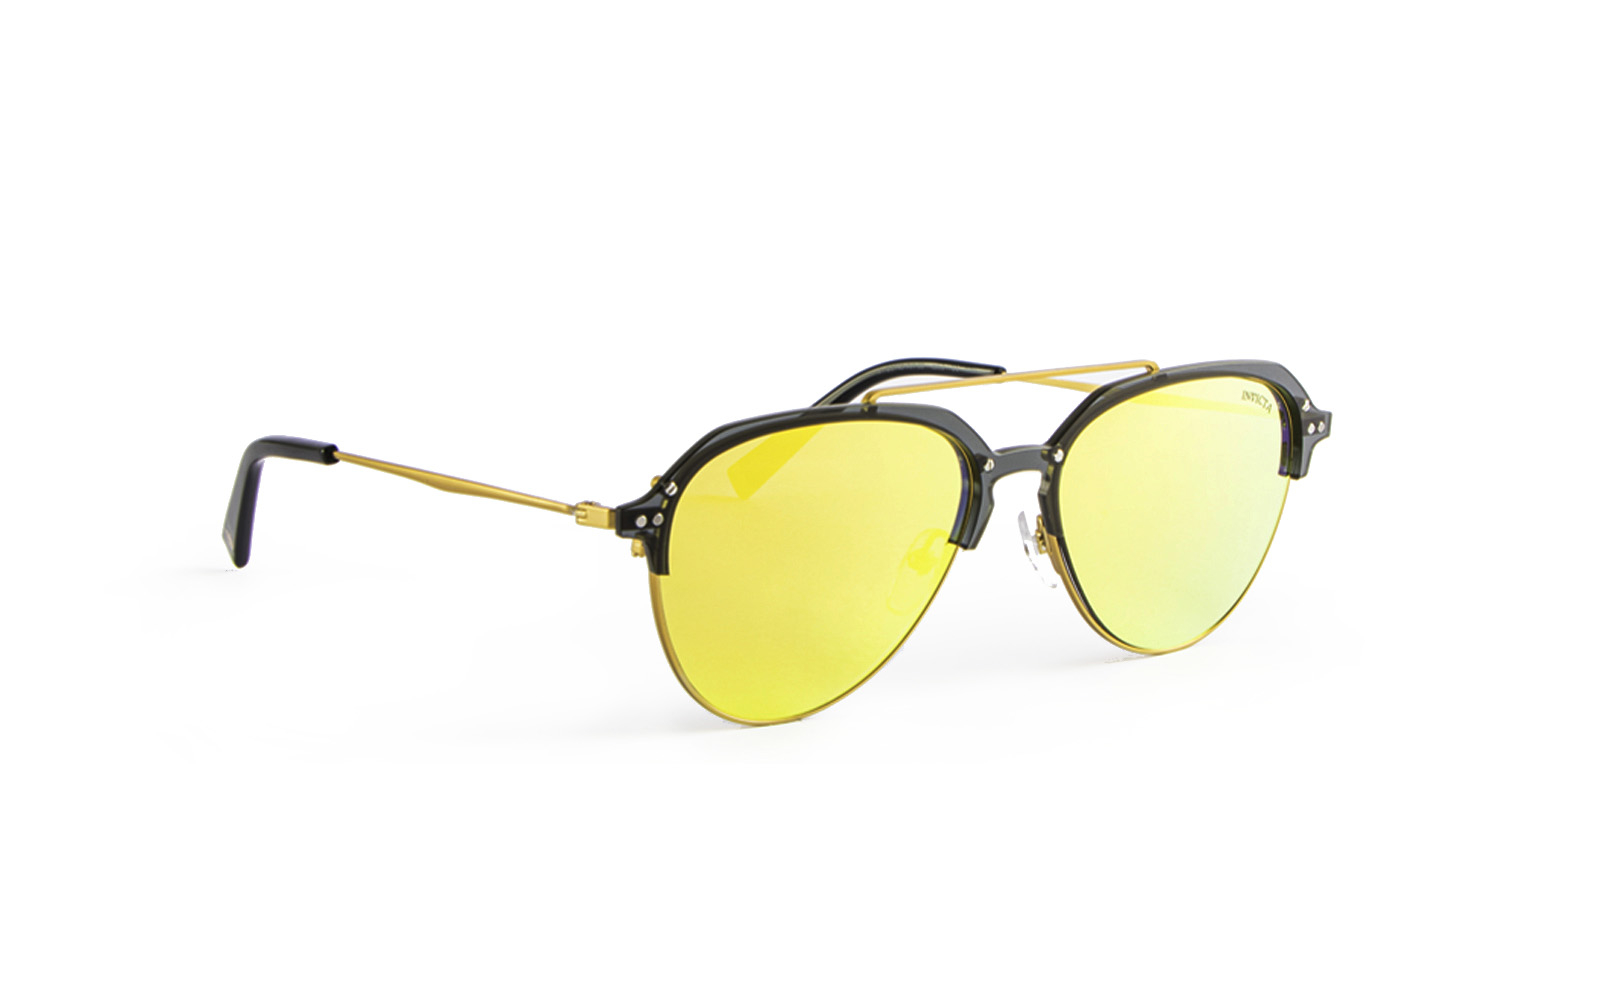 Invicta Men's Aviator Clubmaster Style Sunglasses, Yellow (21740-AVI-08)